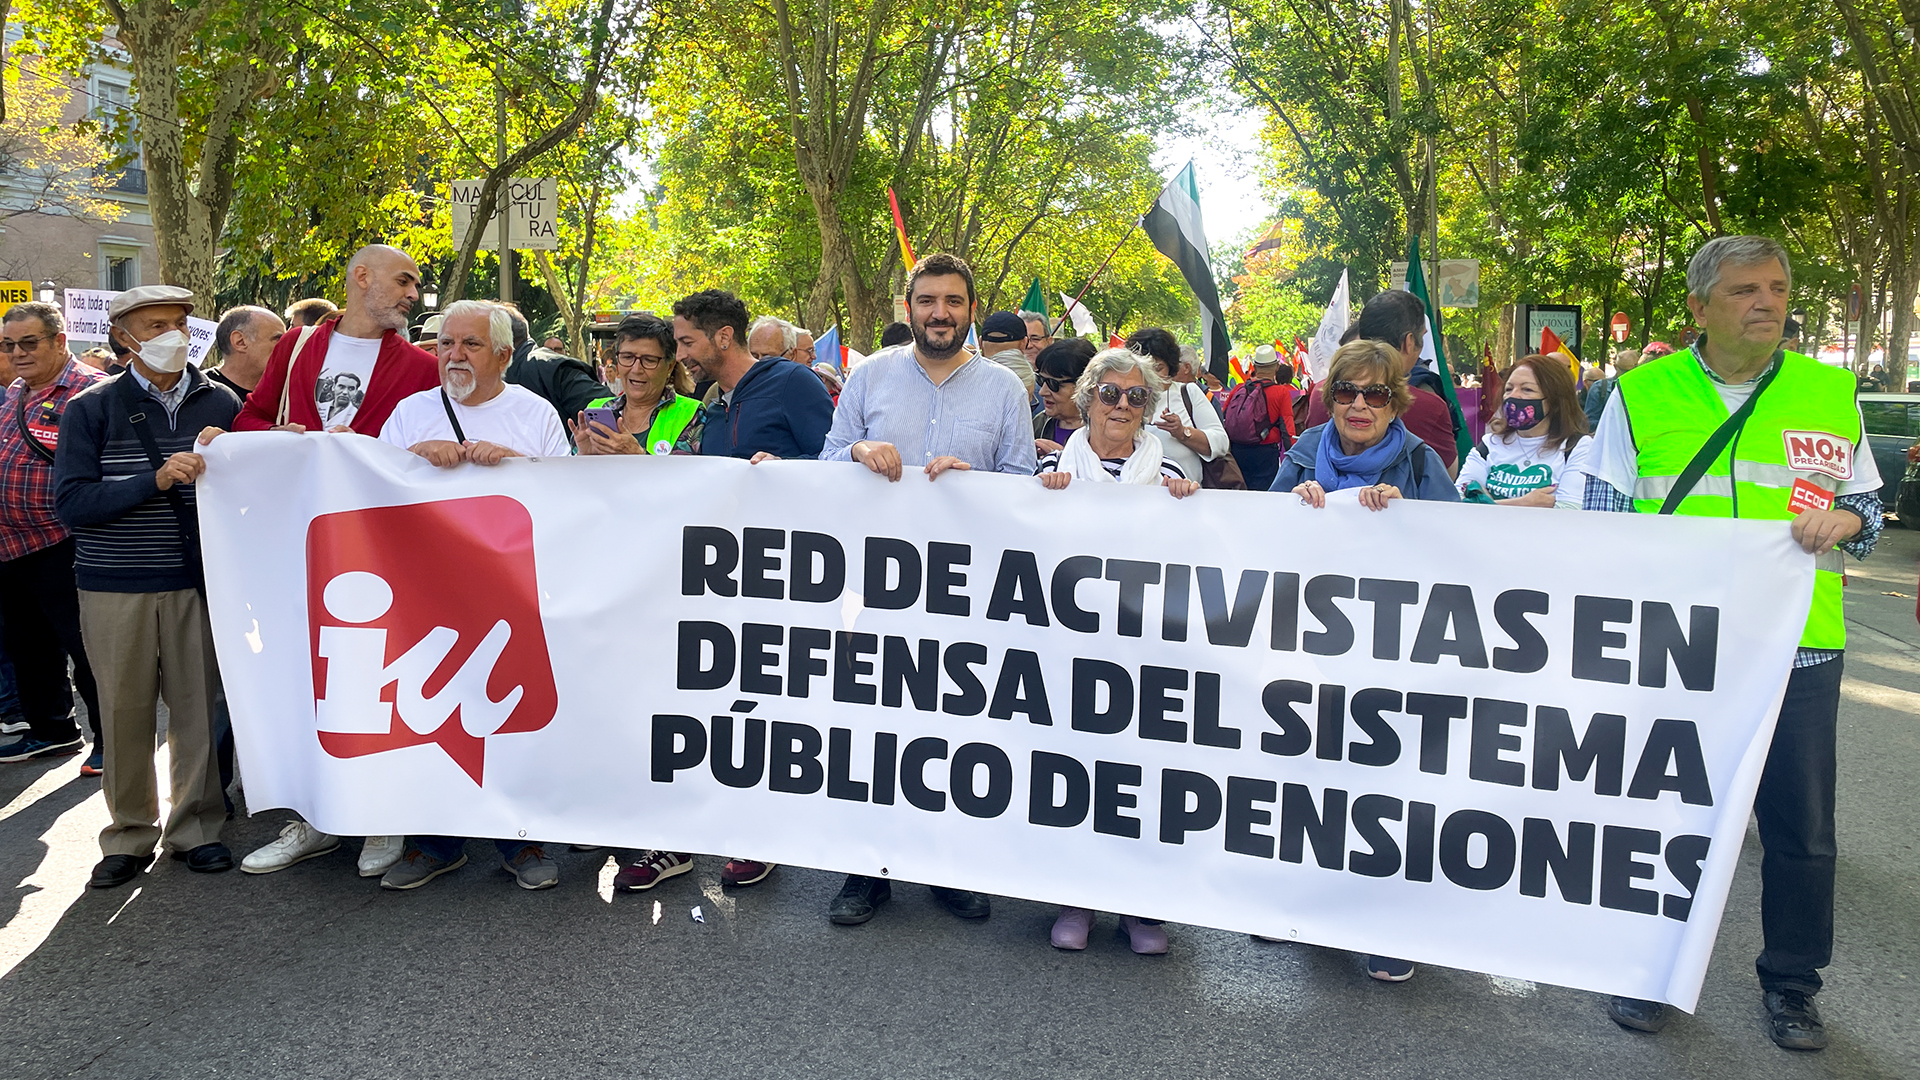 Manifestación por unas pensiones dignas